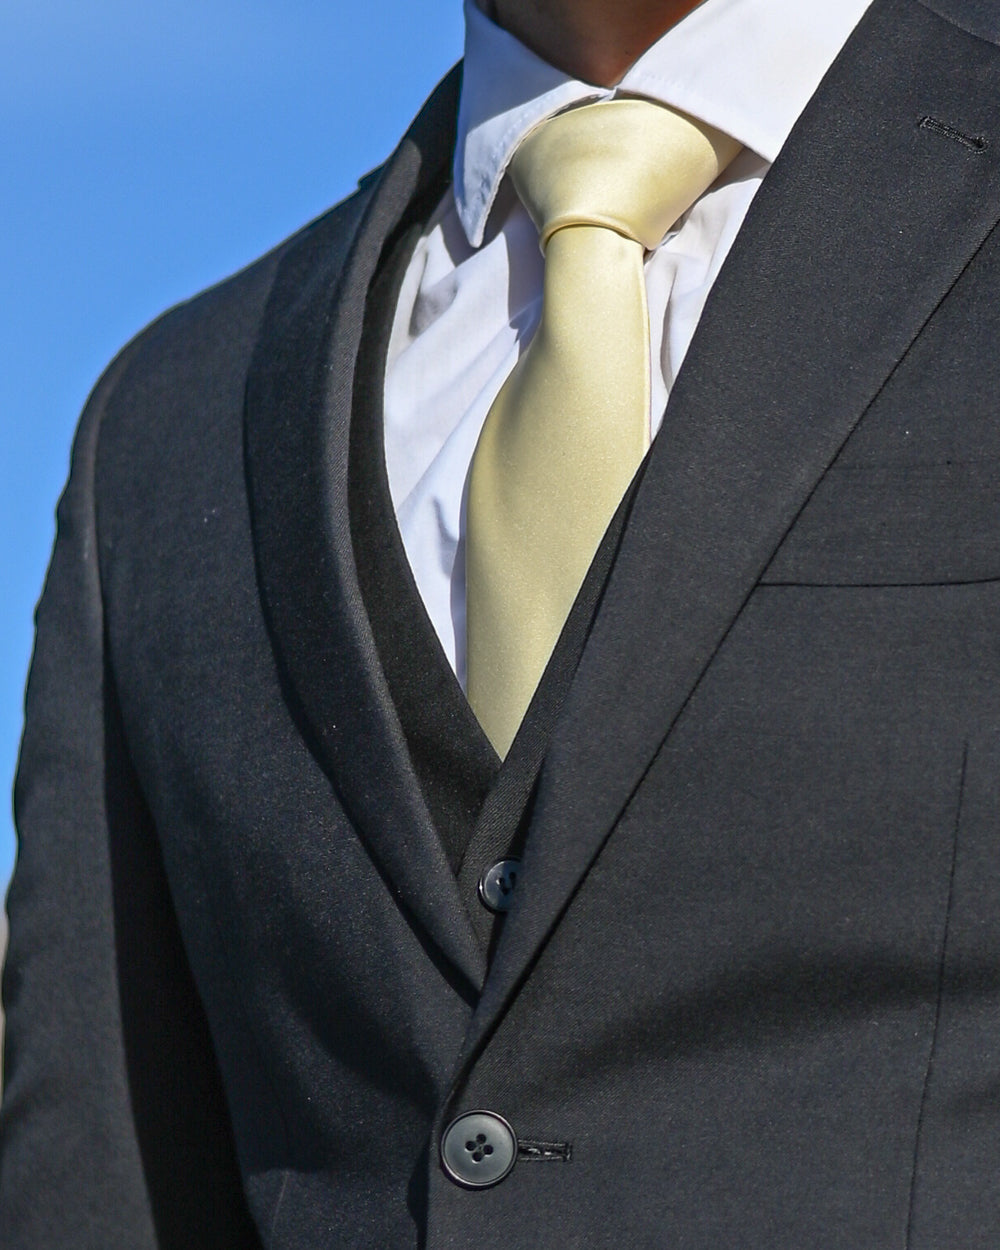 Gold silk-look tie worn with three-piece black suit